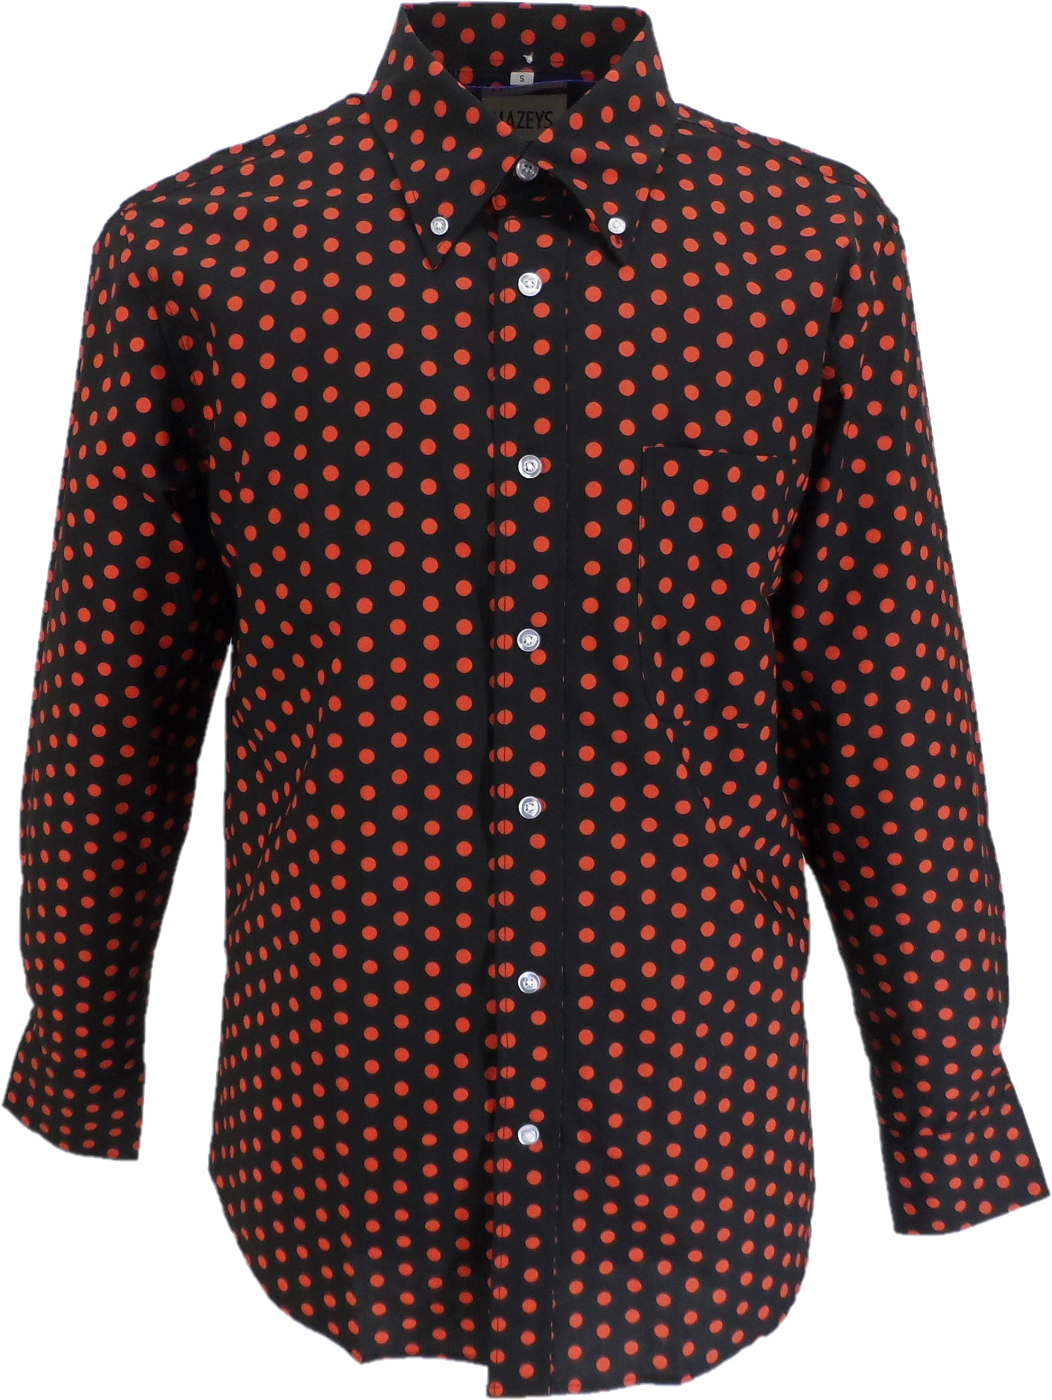 Mazeys Camisas para hombre, 100% algodón, estilo retro, color negro y rojo,…